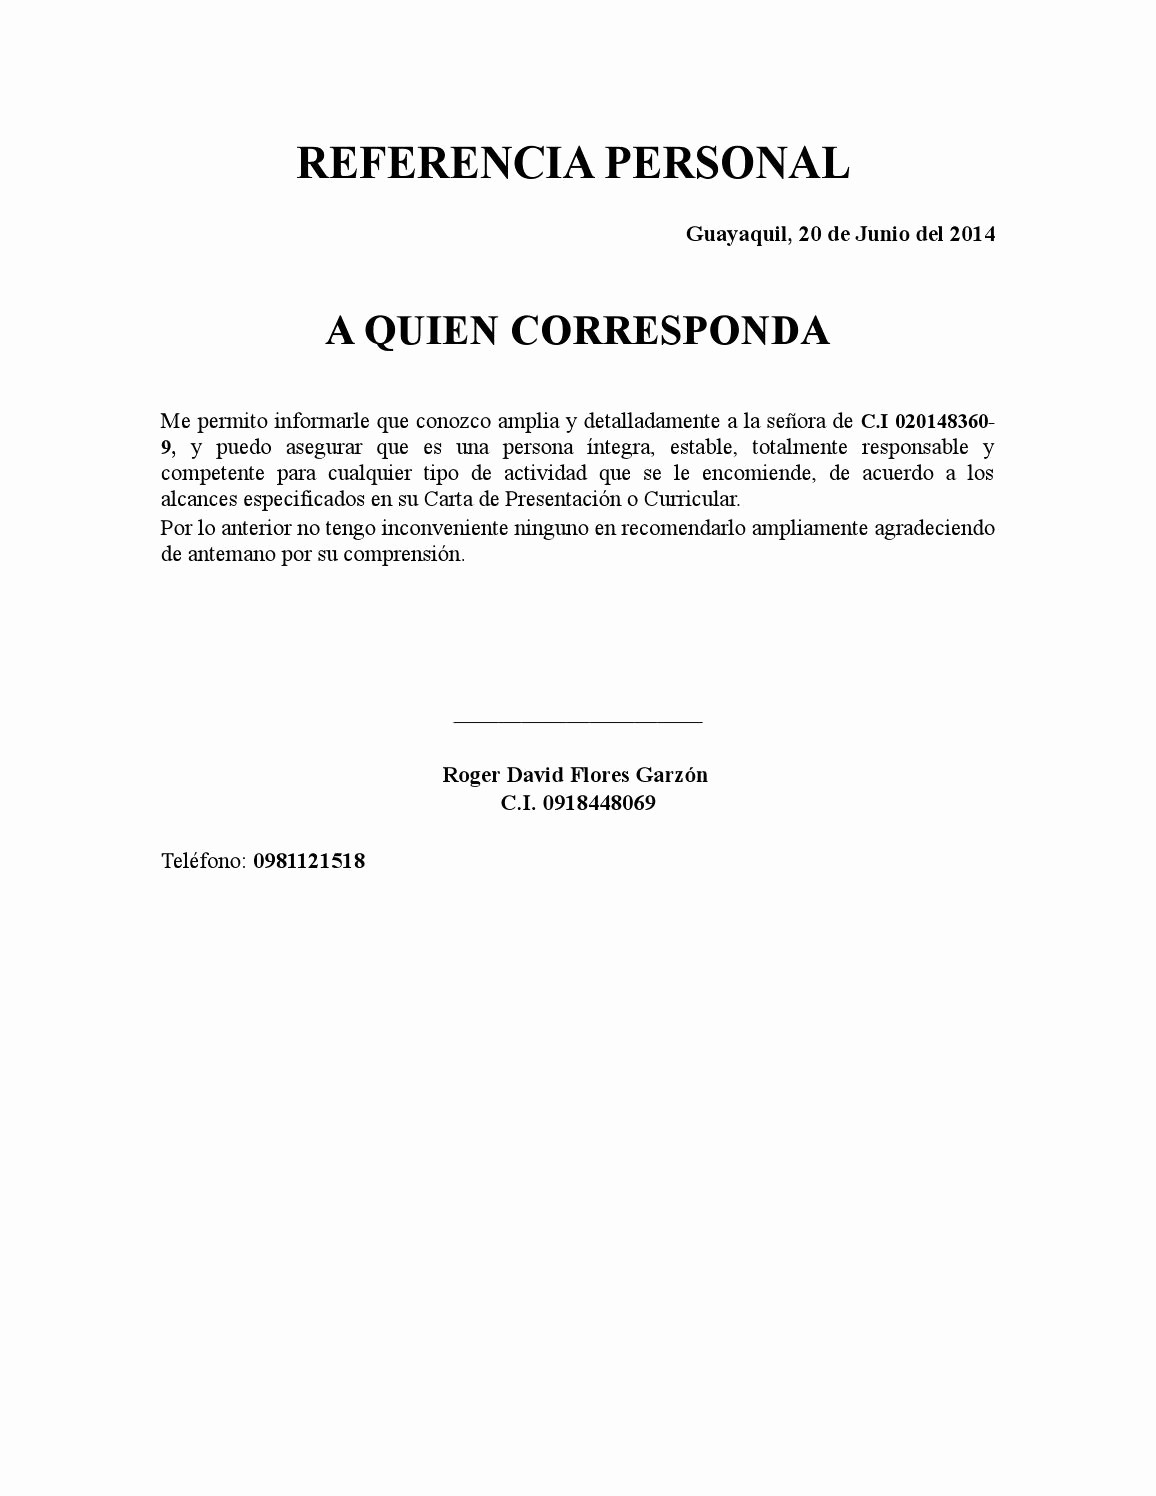 Formatos Carta De Recomendacion Personal Elegant Referencia Personal Copia by Roger David Flores Garzon issuu